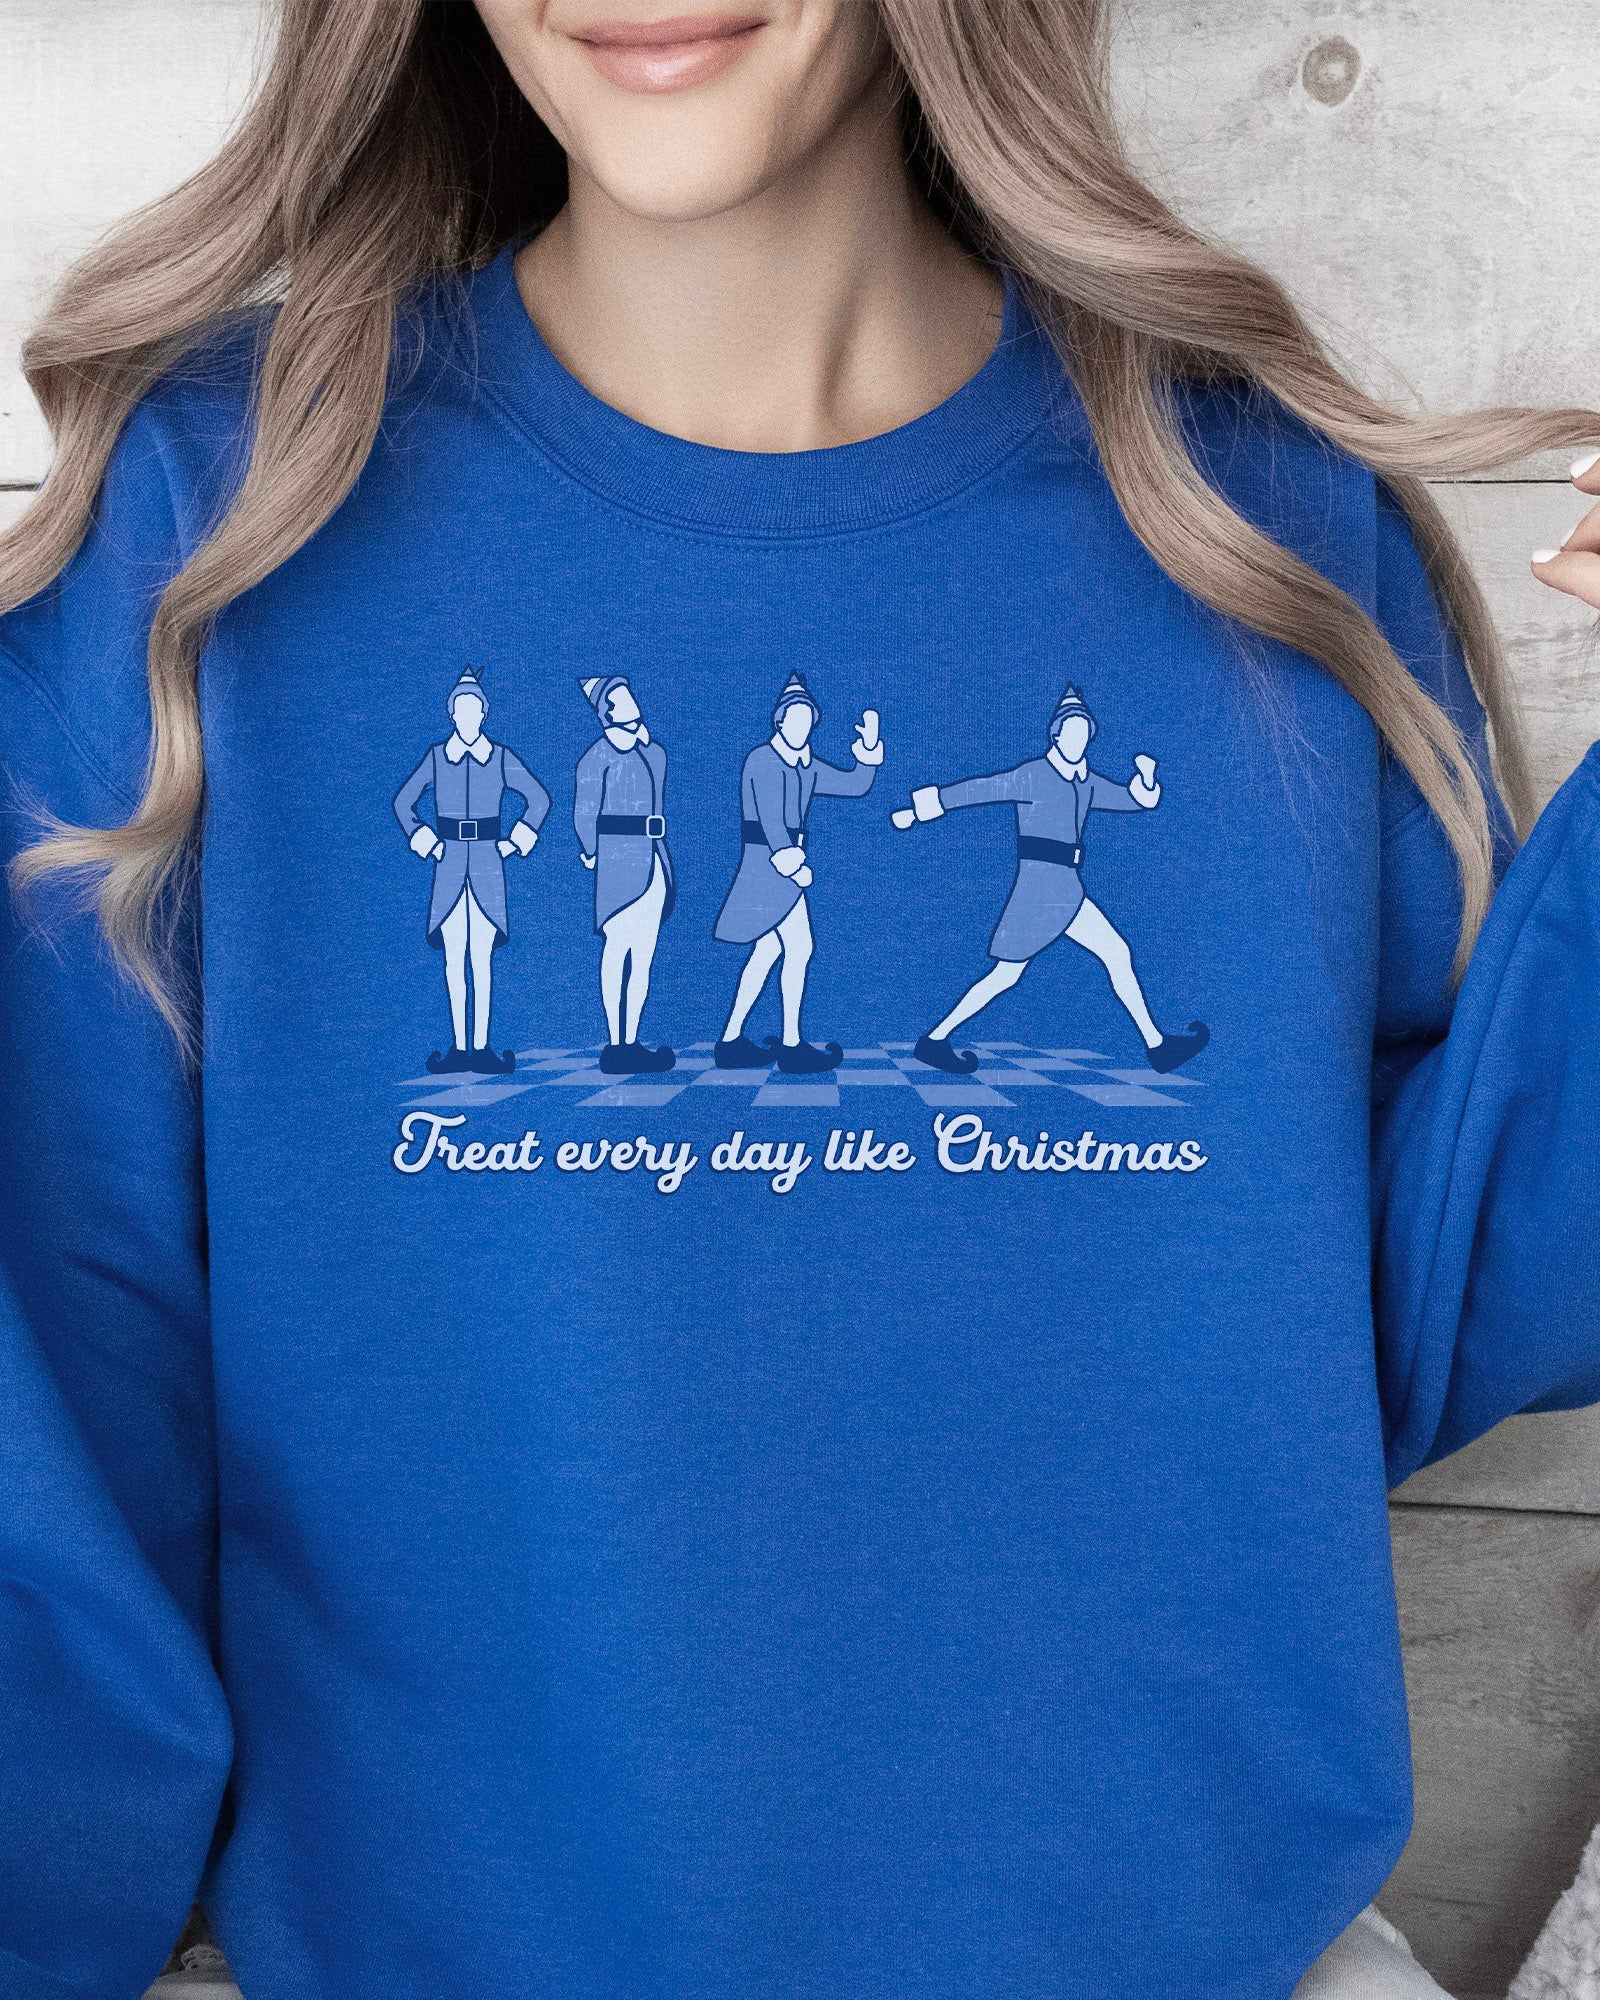 Every Day Like Christmas Sweatshirt